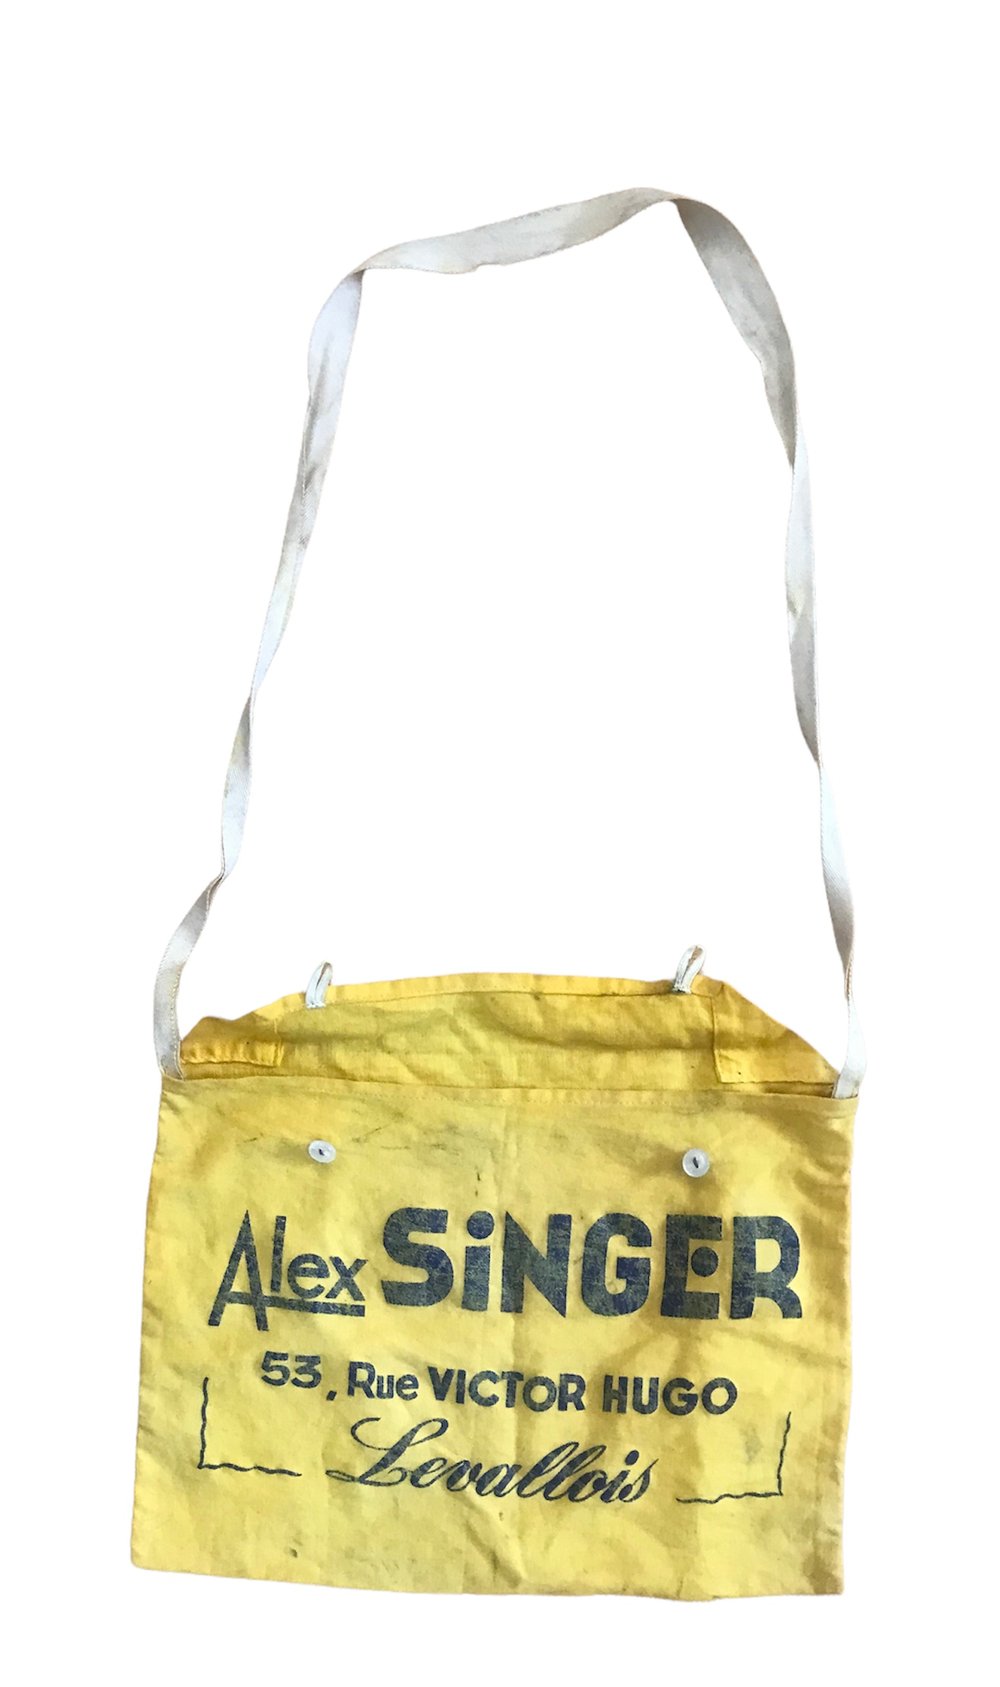 ðŸ‡«ðŸ‡· Iconic Alex Singer musette bag